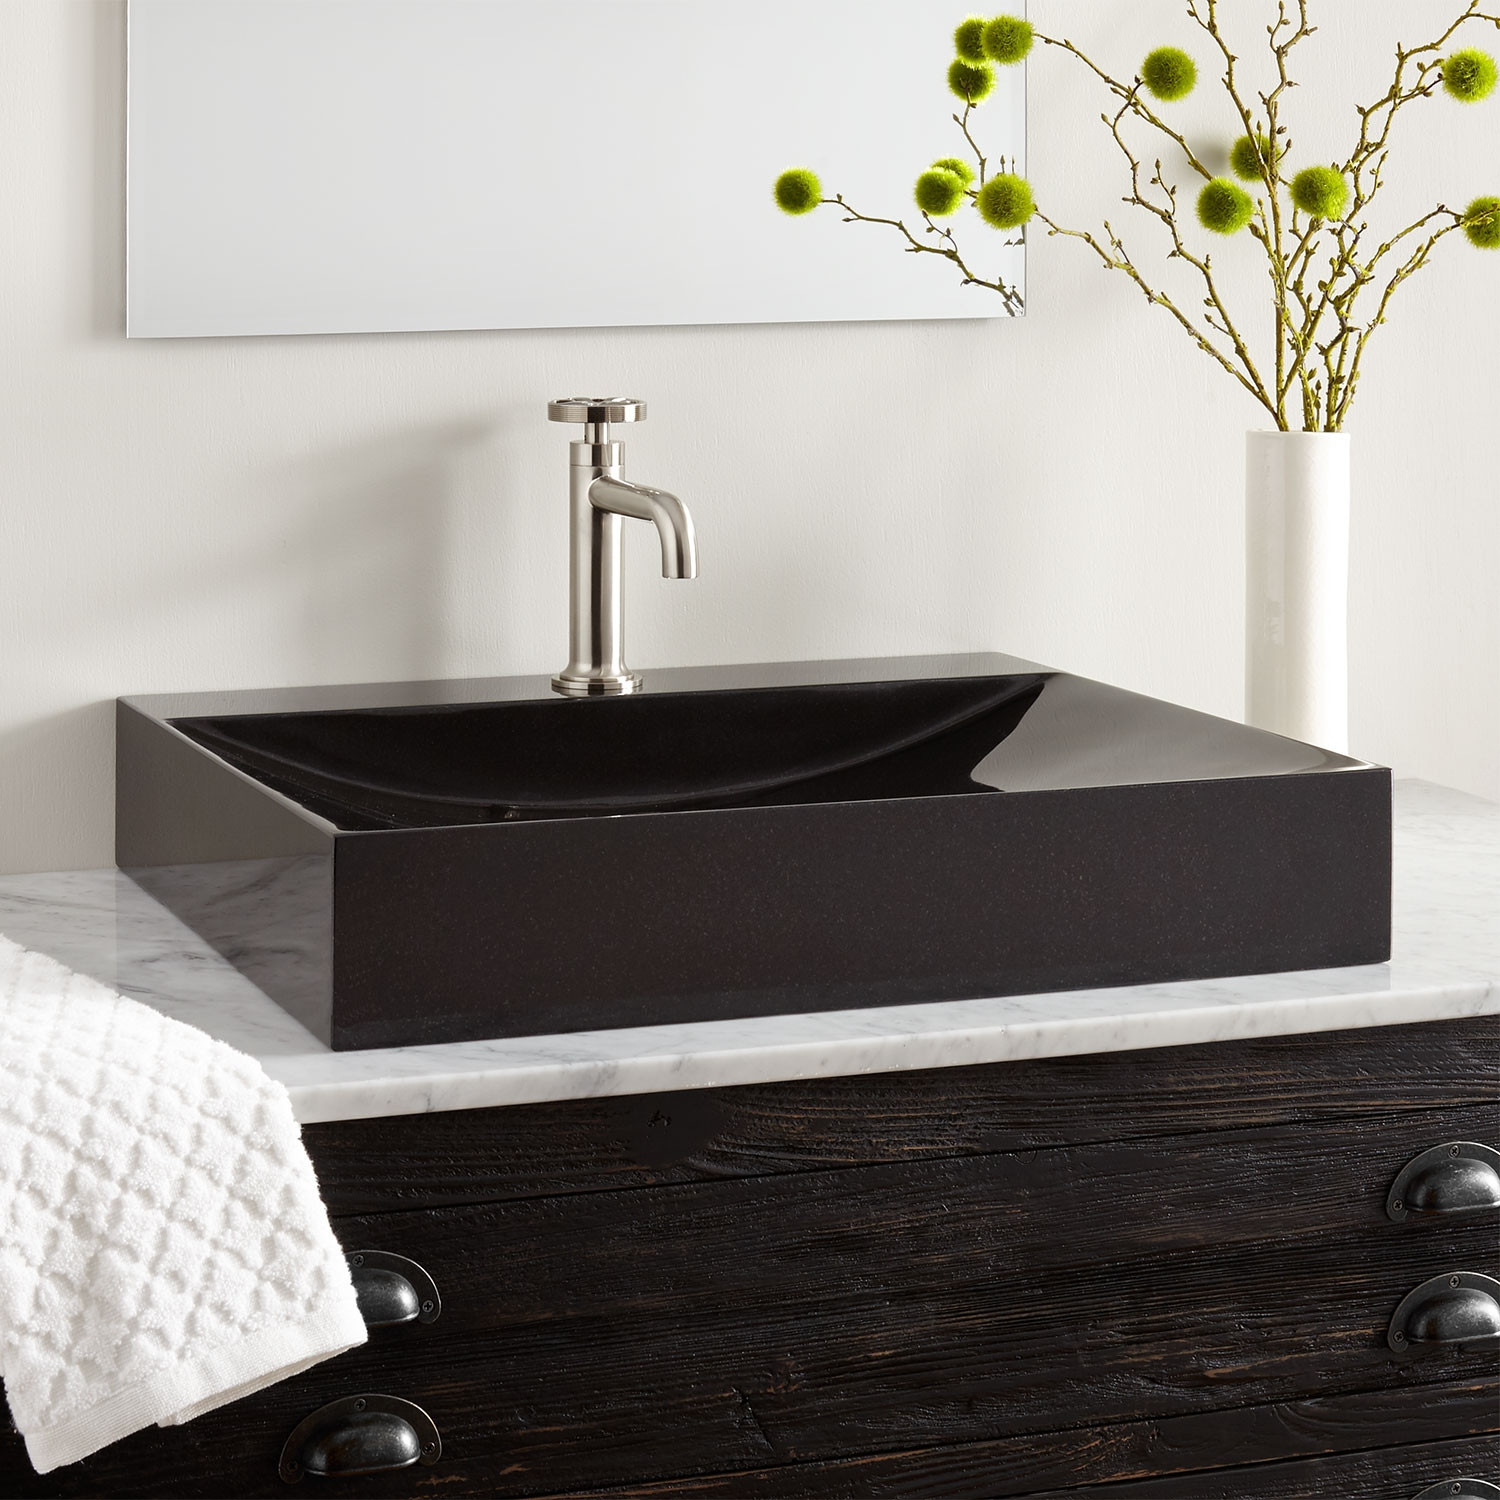 Rectangle Sink Bathroom
 Rectangular Black Granite Vessel Sink with Polished